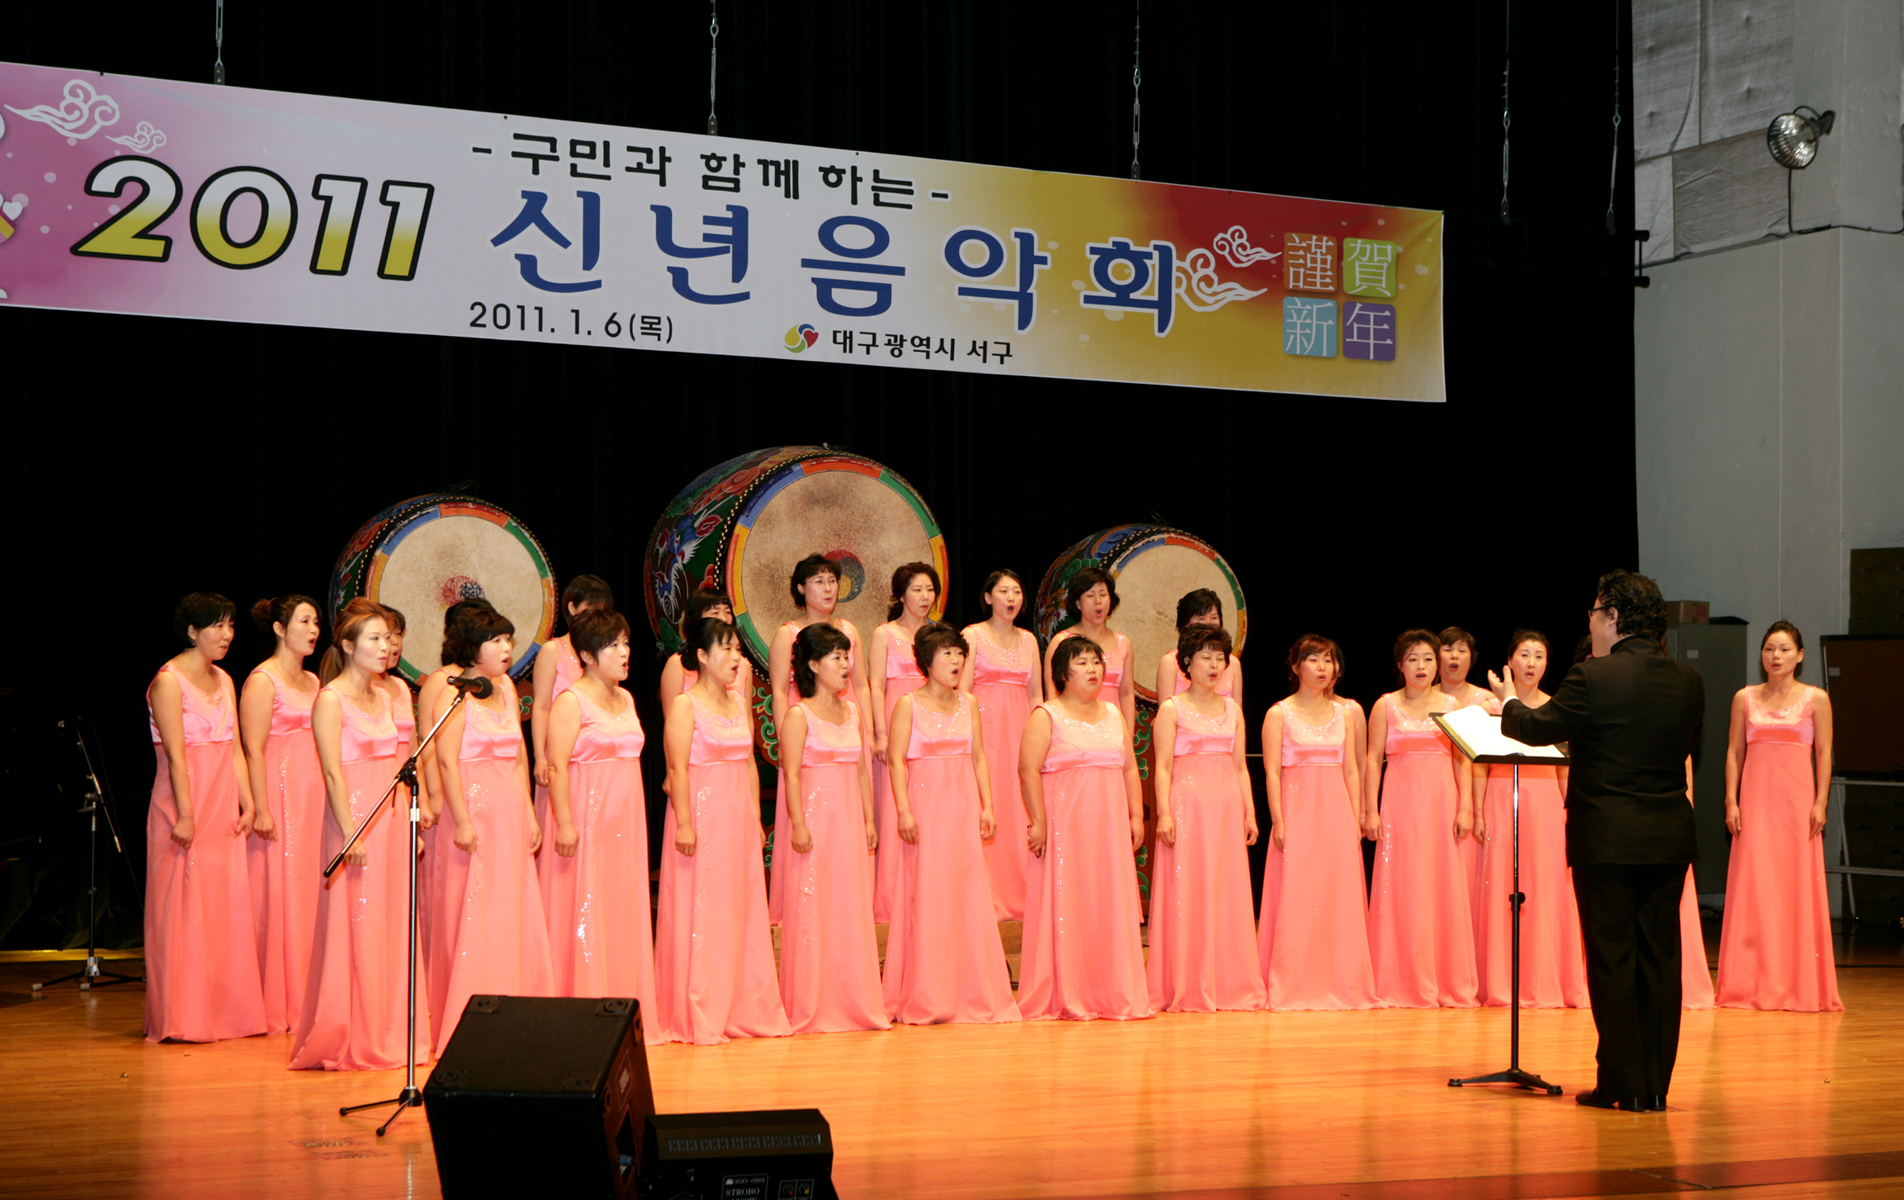 2011 신년교례회 참석 이미지(2)